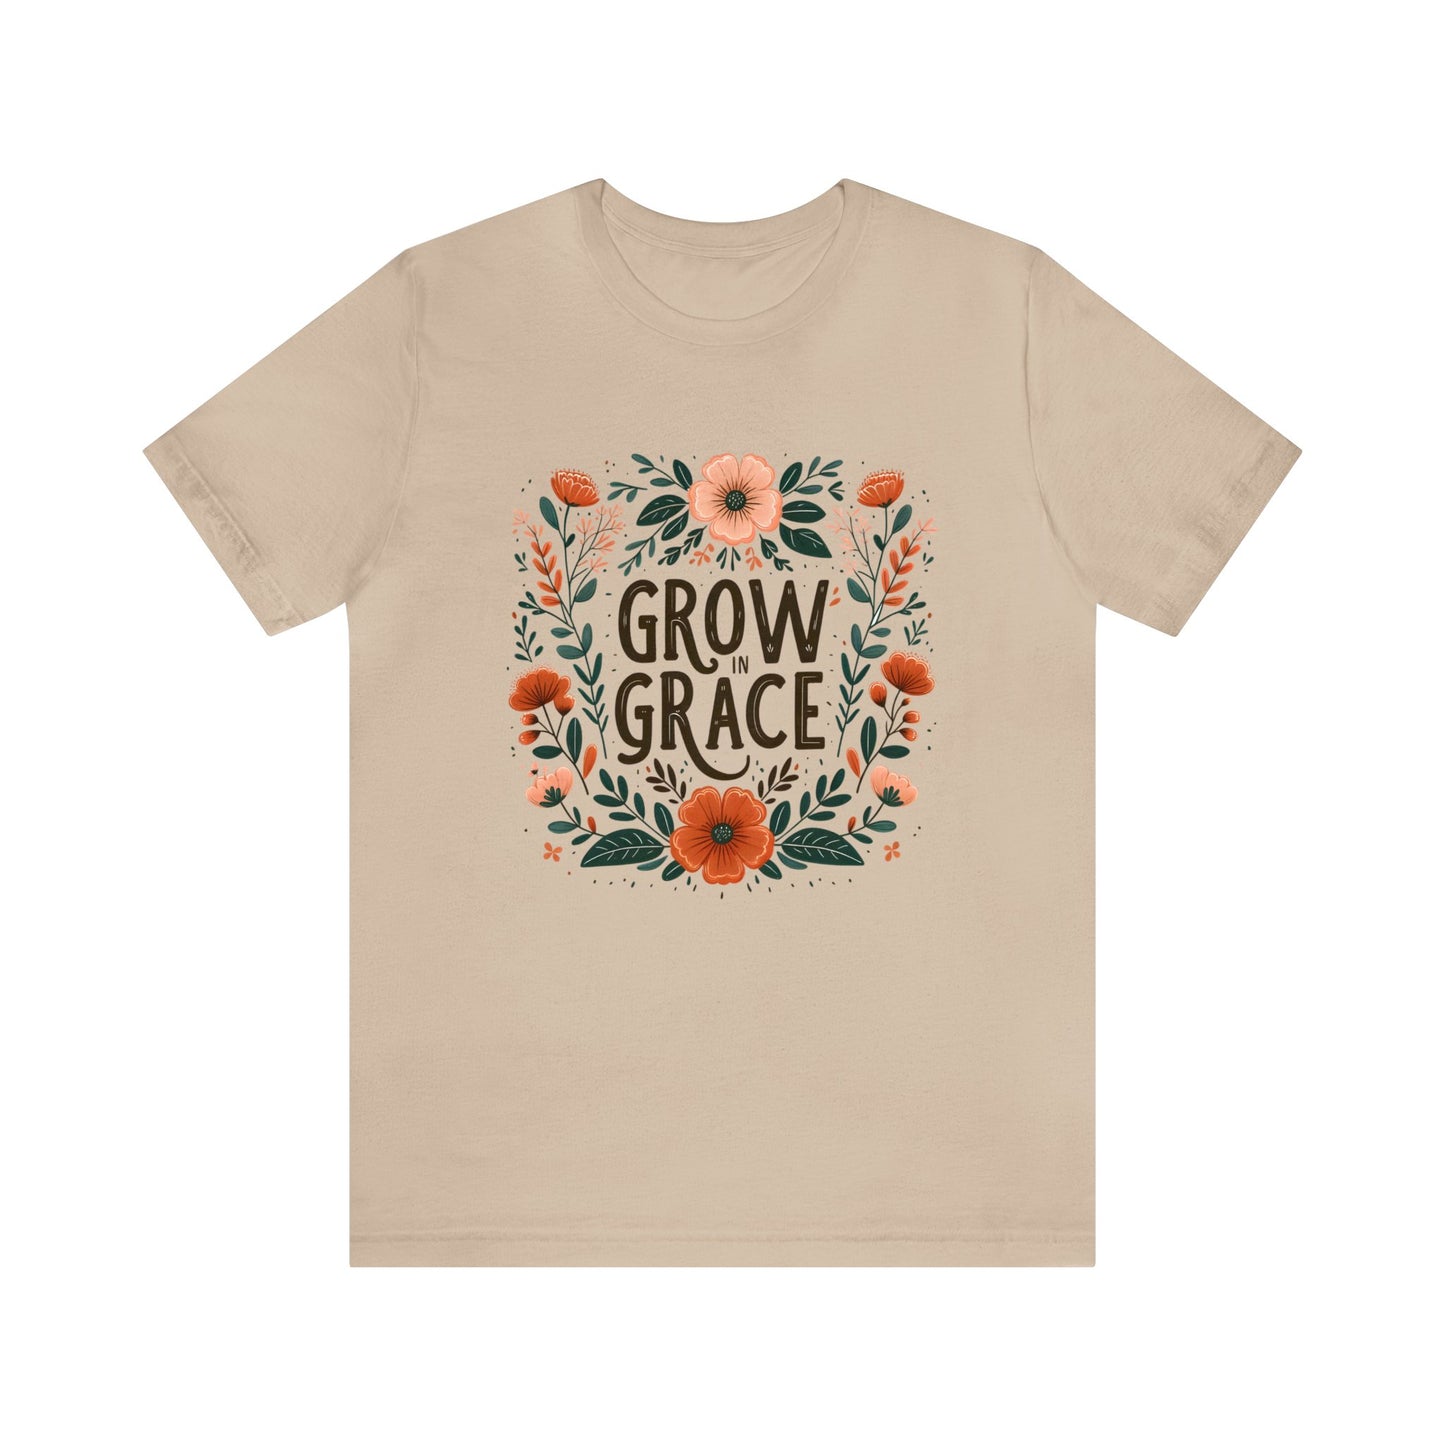 Grow in Grace Women's Short Sleeve Tee